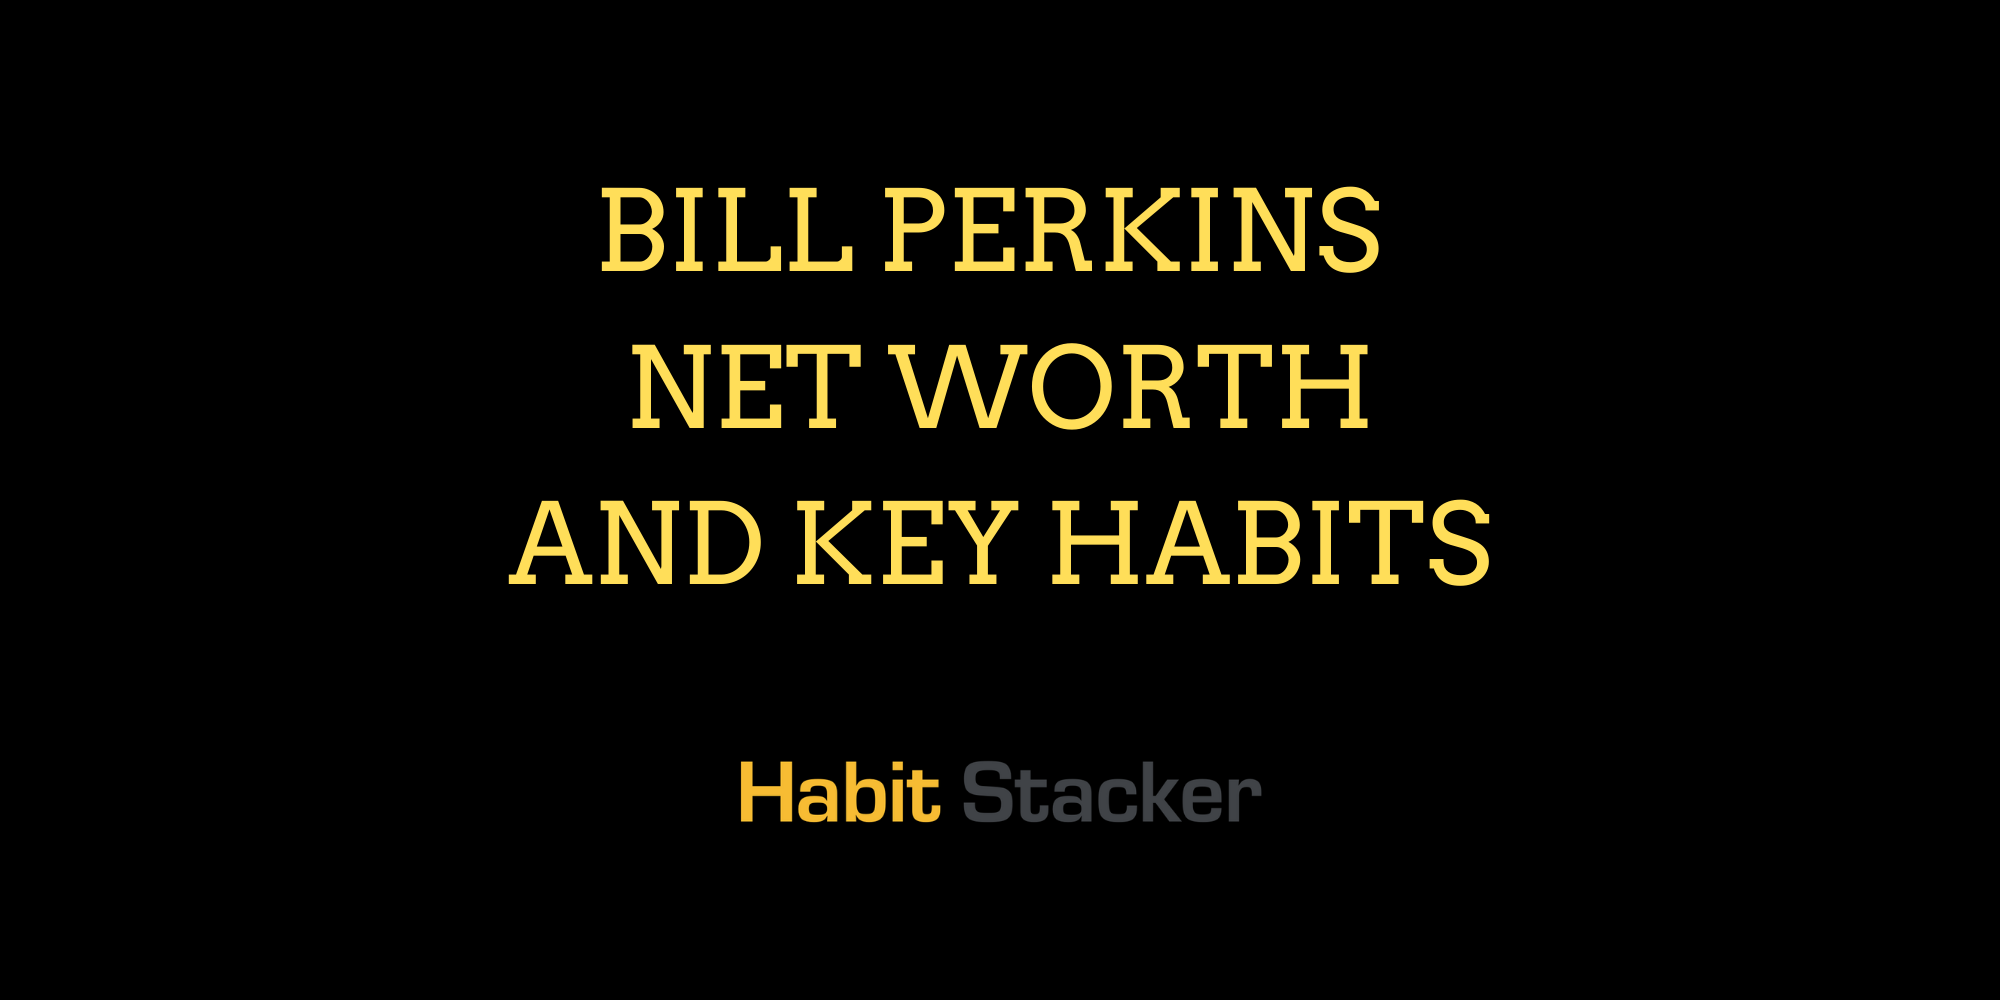 Bill Perkins Net Worth